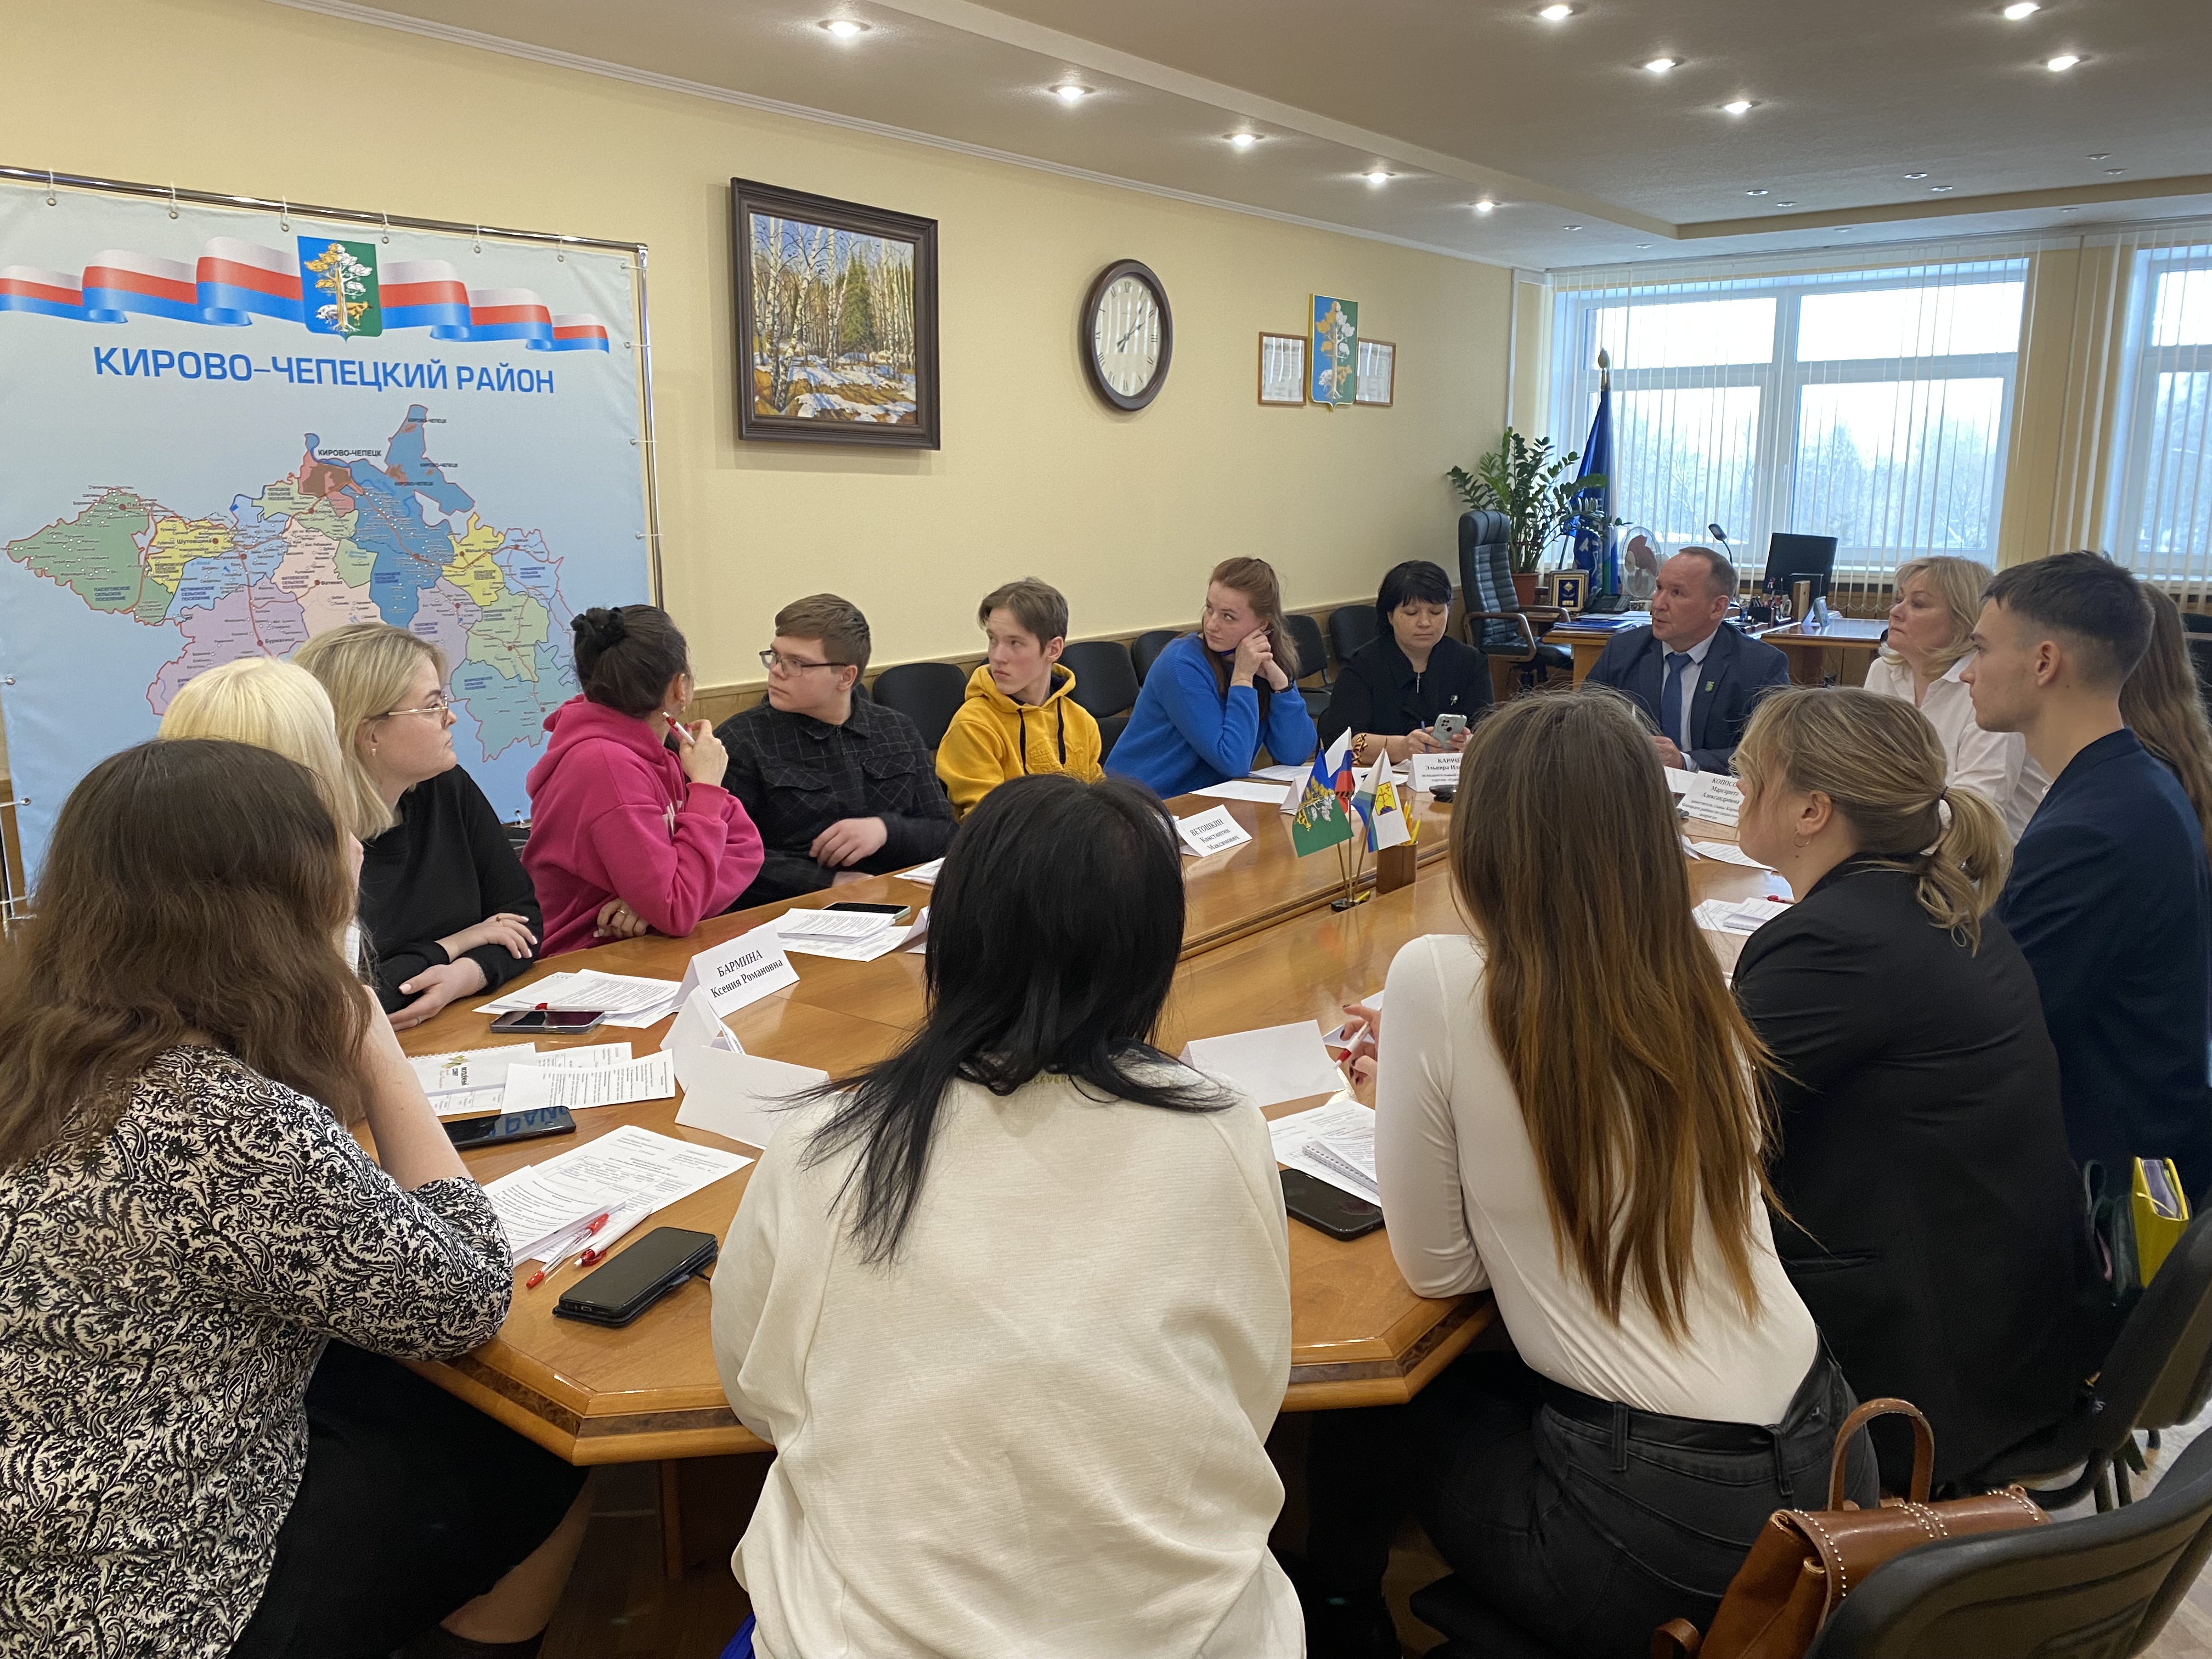 Прошло первое заседание Молодежного совета при главе Кирово-Чепецкого района.